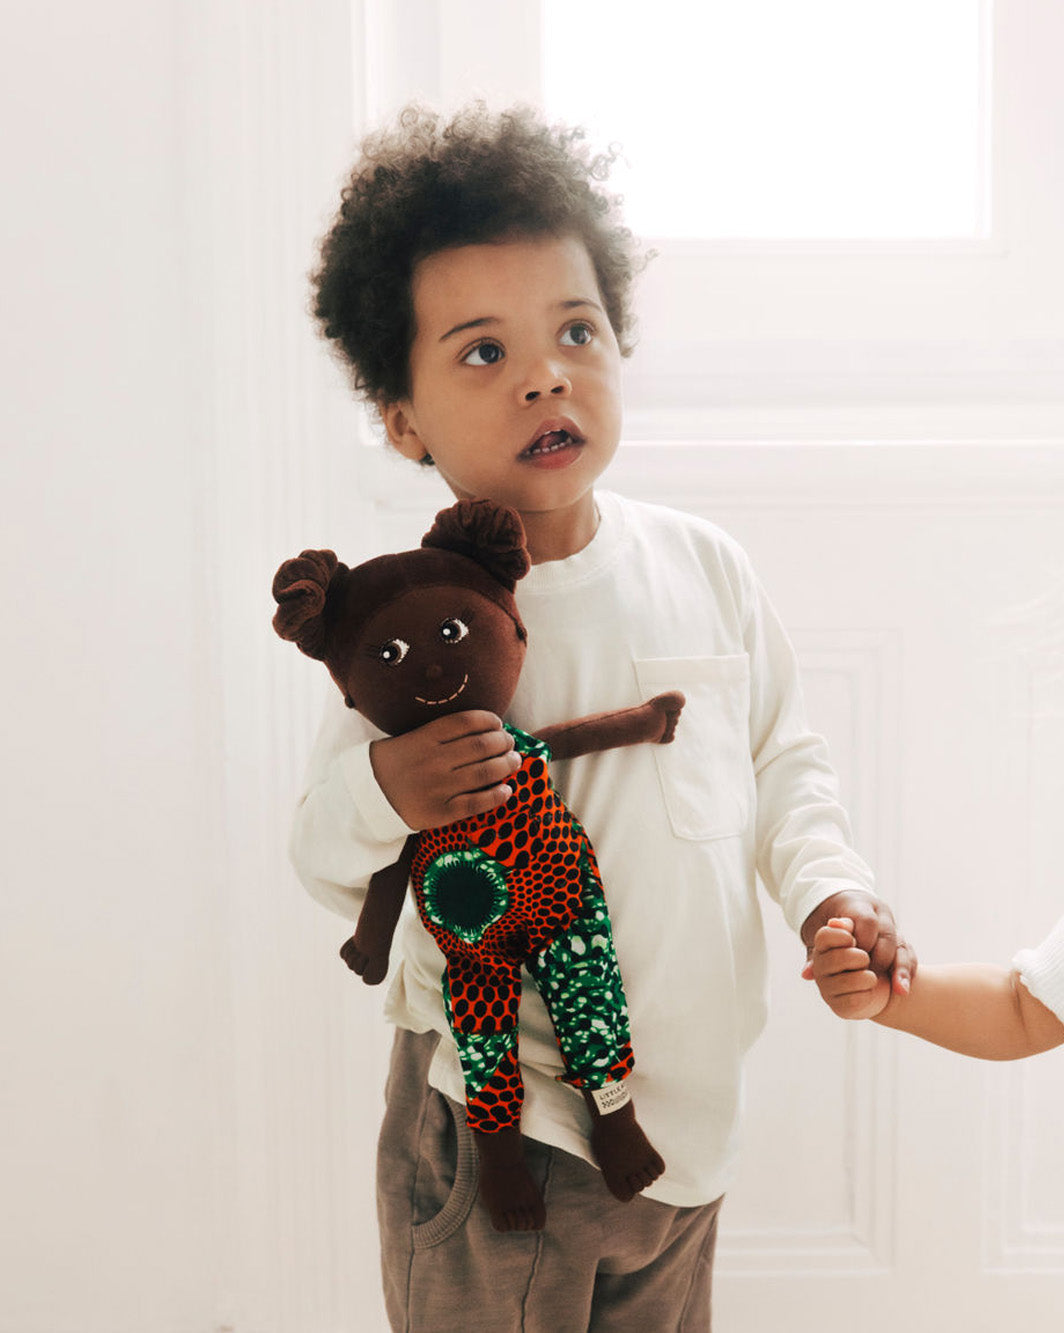 Kinderpuppe mit Haarzöpfen und Puppen Outfit aus Baumwolle. Kind hält Puppe in der Hand